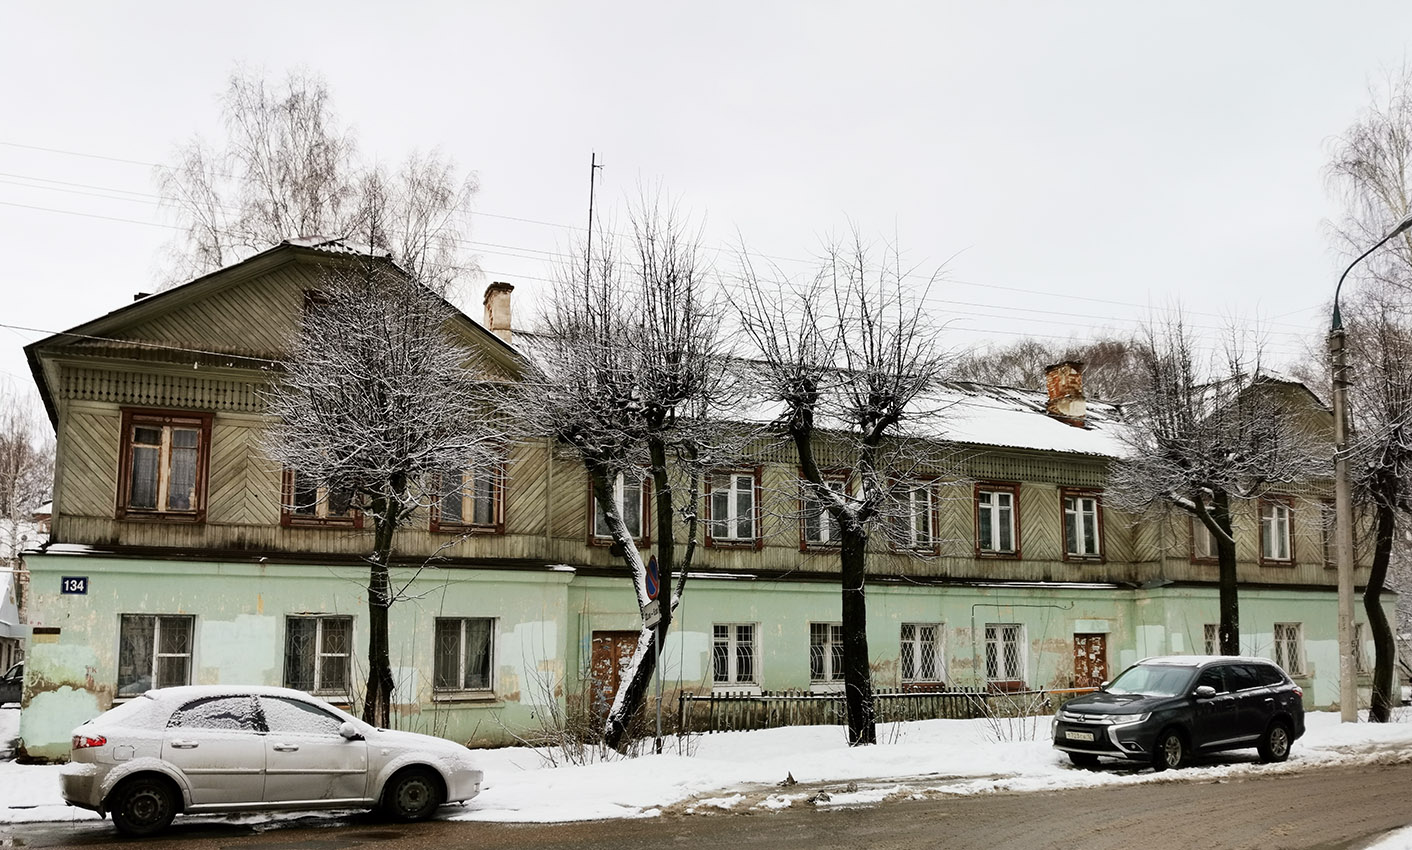 Йошкар-Ола, Улица Волкова, 134